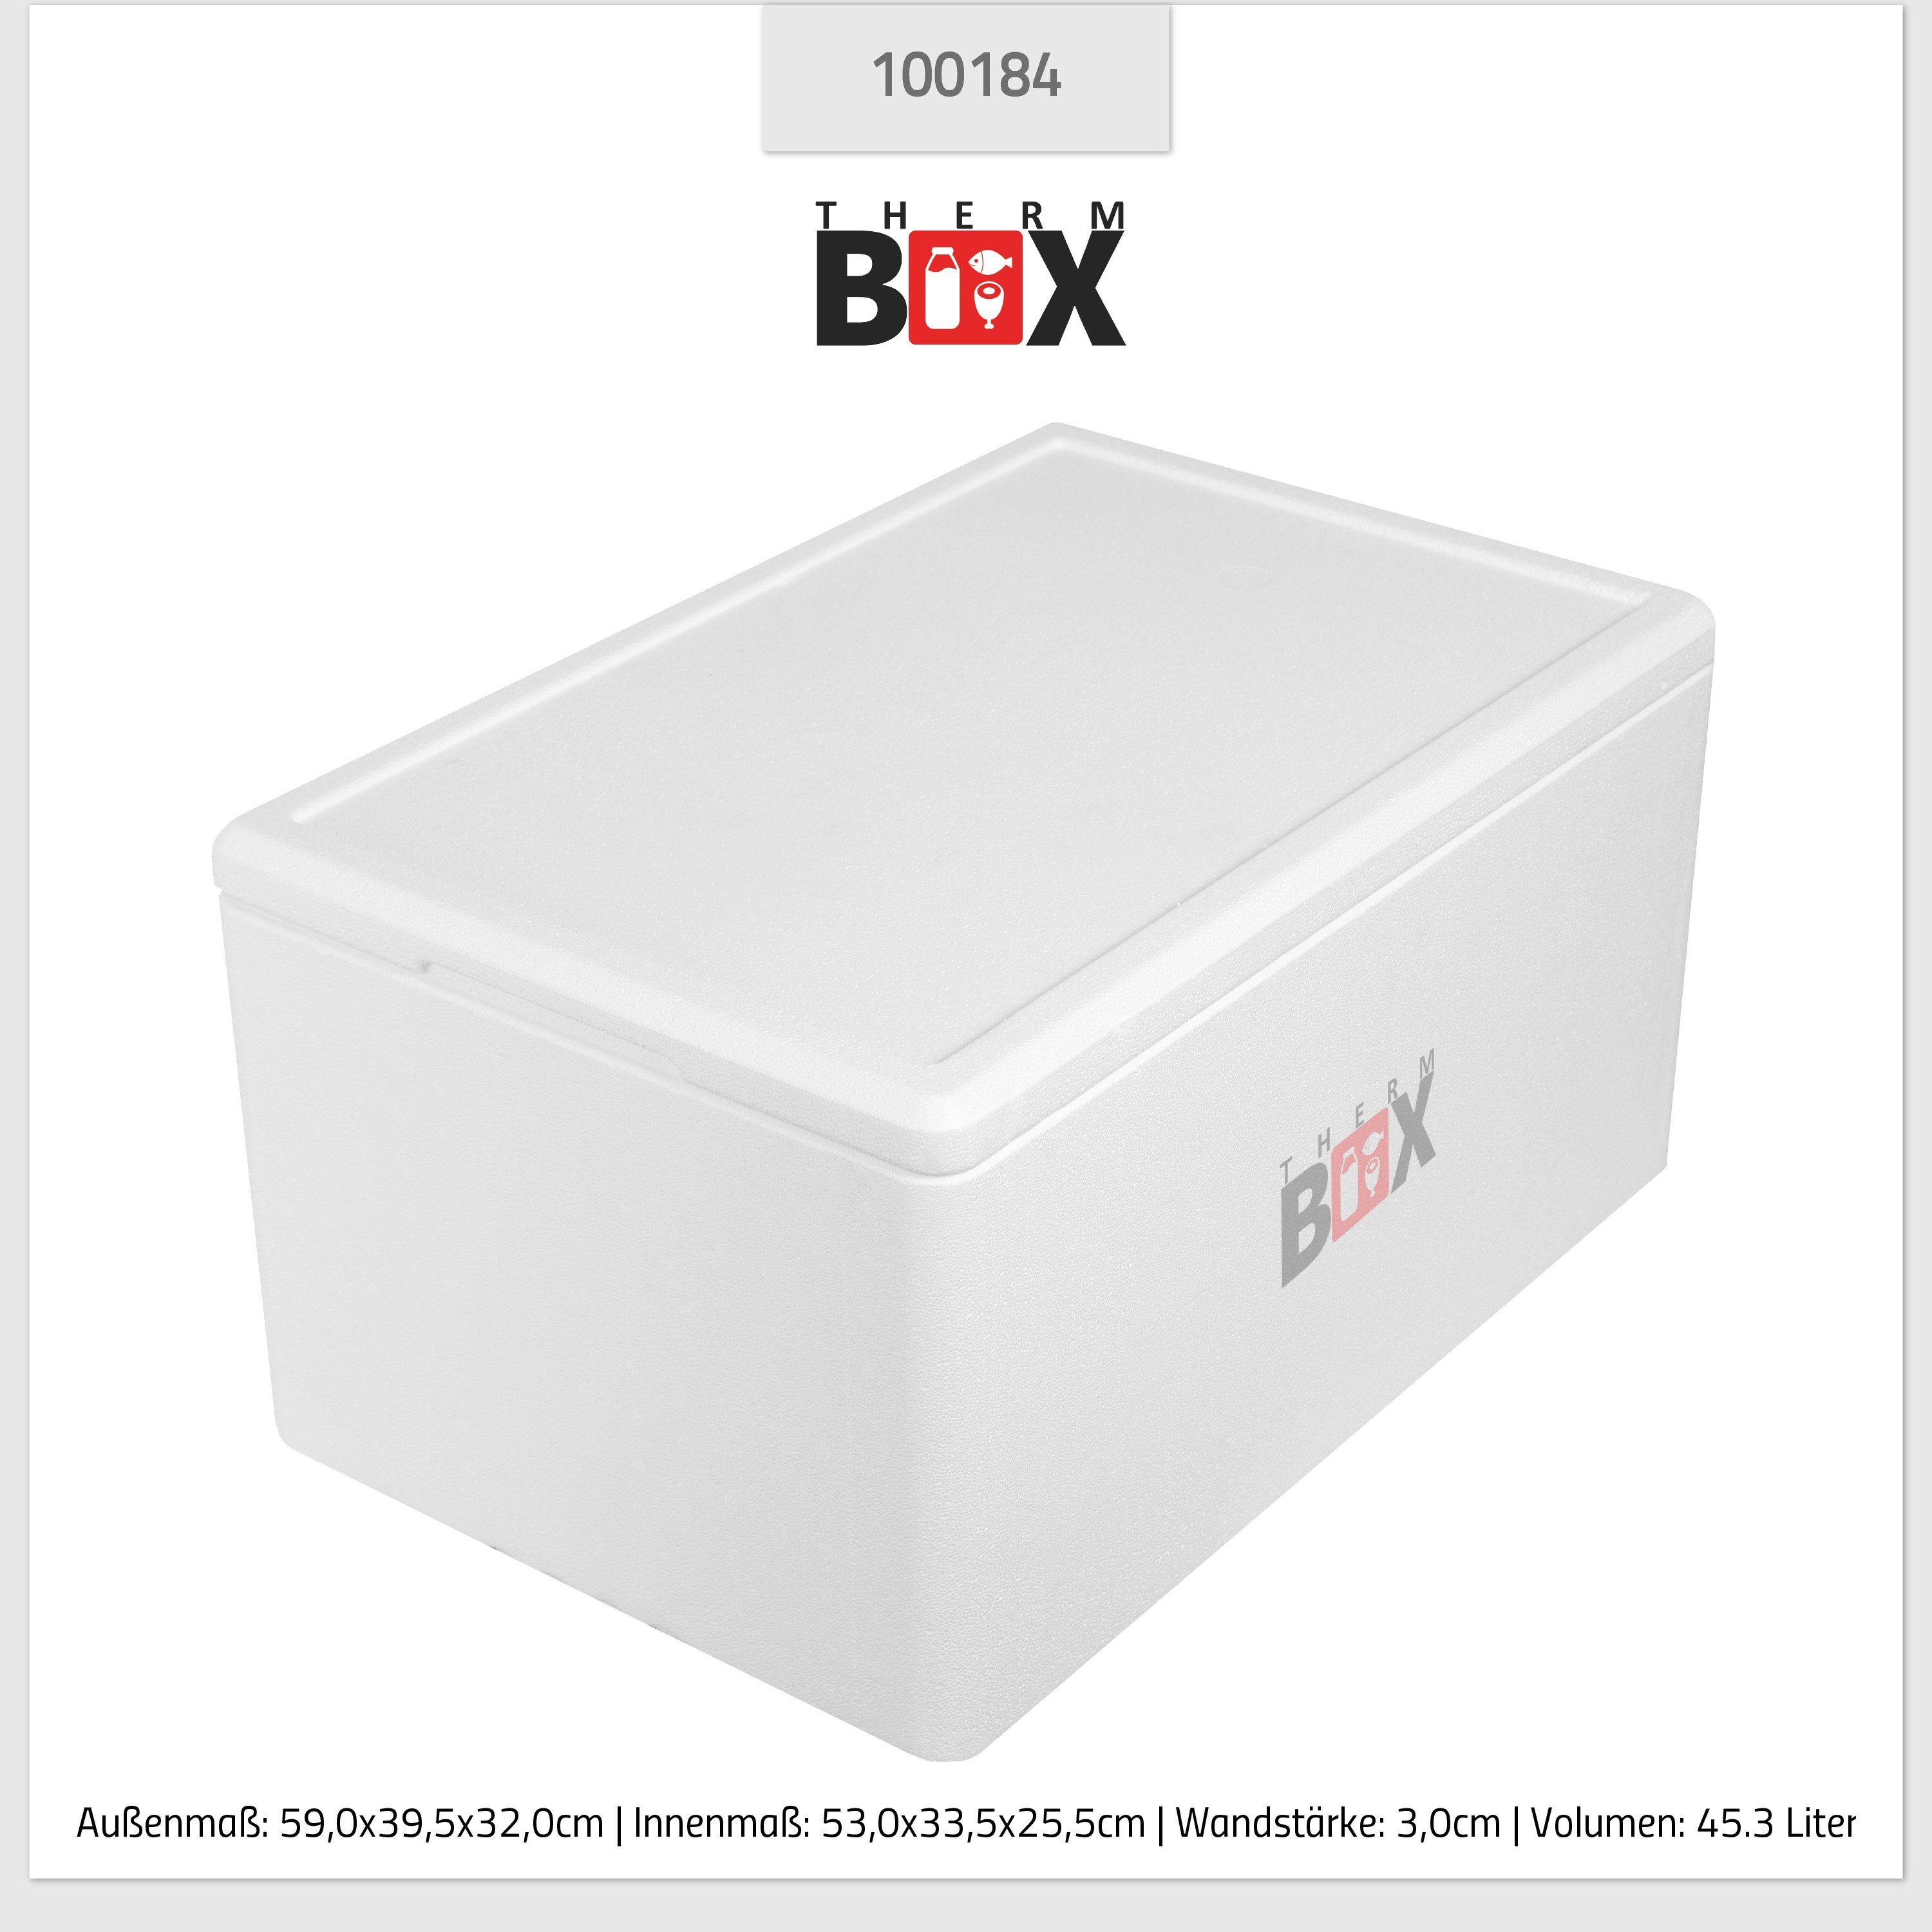 0-tlg., Wiederverwendbar 45,3L, Styropor-Verdichtet, THERM-BOX Innen: (1, Thermobehälter InIsolierbox Thermobox Wand: Styroporbox 45W Box Warmhaltebox mit Karton), 53x33x25cm Deckel 3cm Kühlbox im